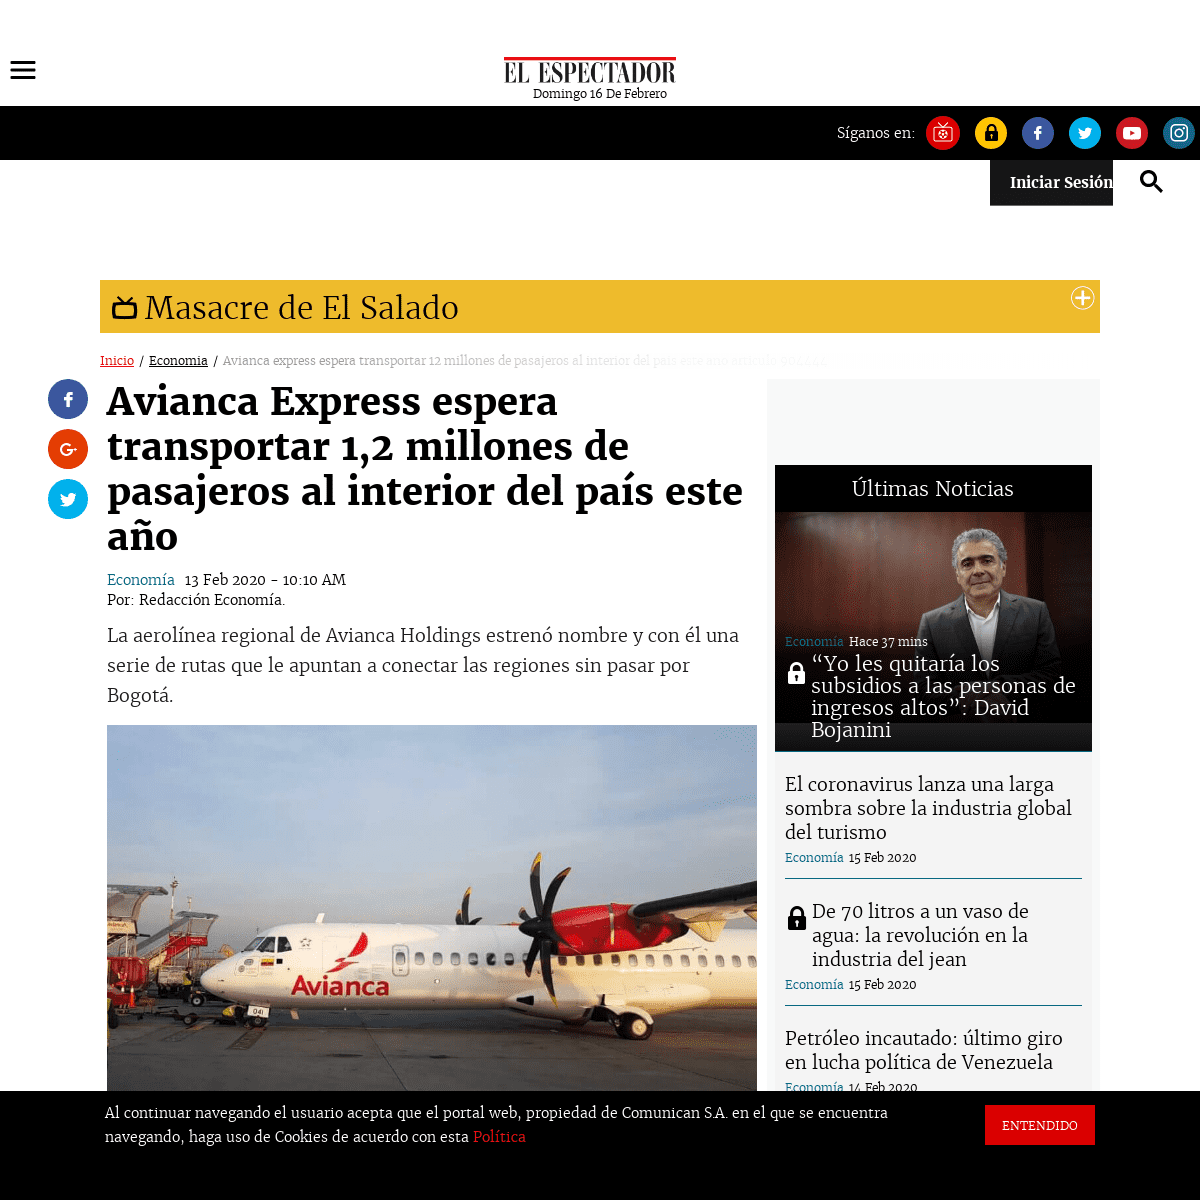 A complete backup of www.elespectador.com/economia/avianca-express-espera-transportar-12-millones-de-pasajeros-al-interior-del-p